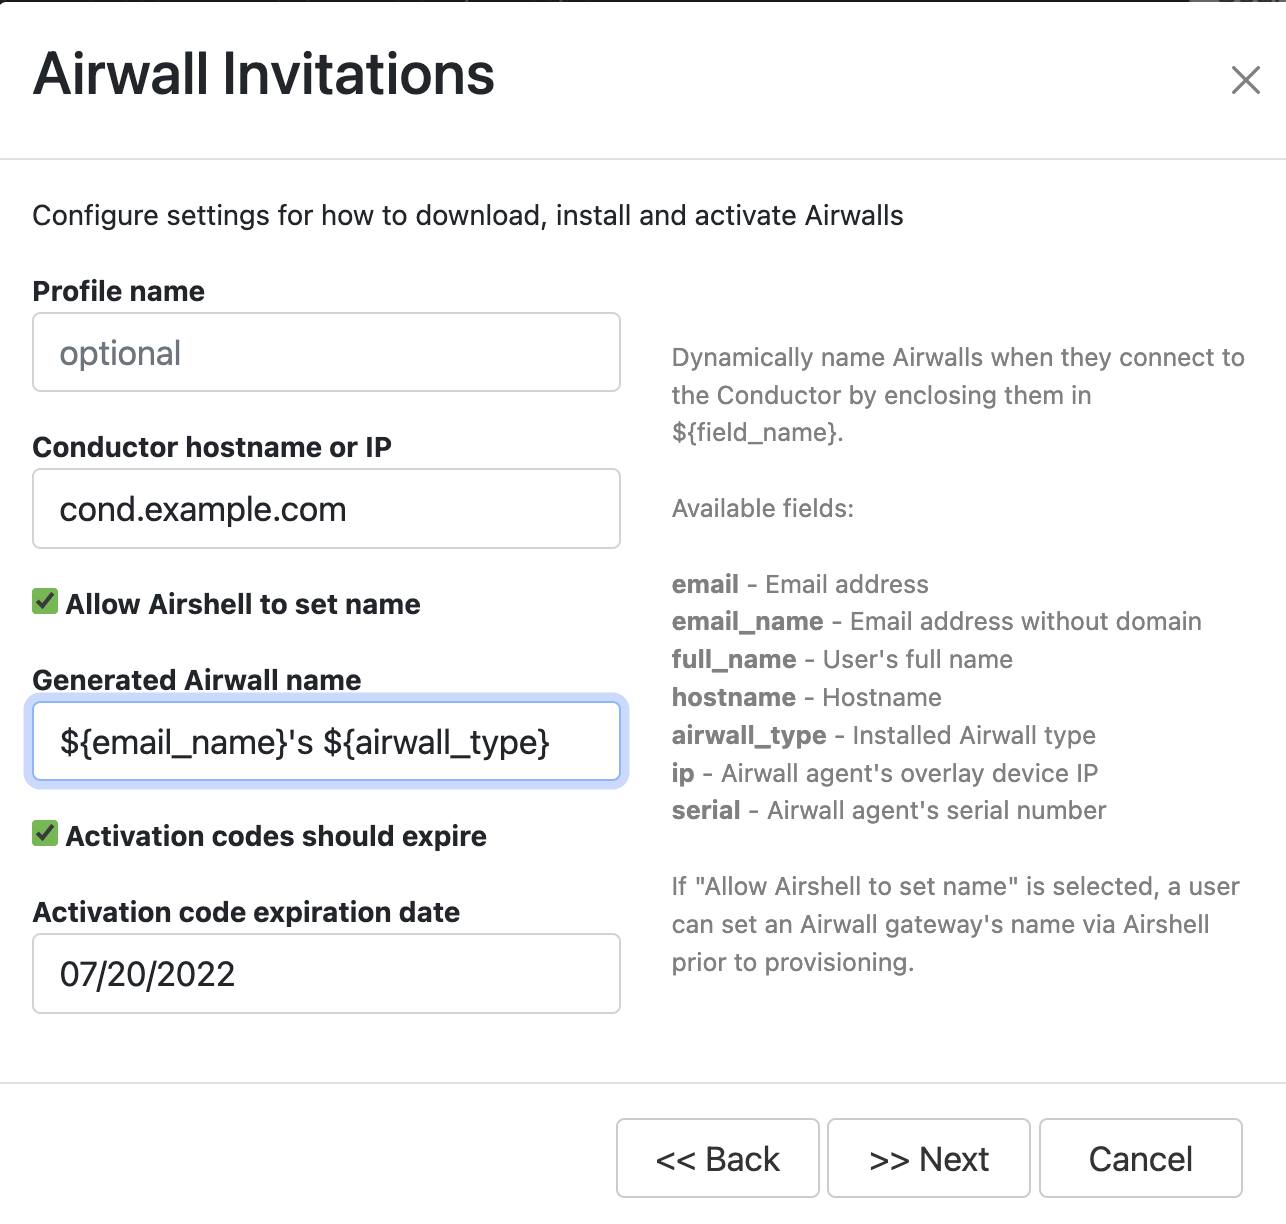 Airwall invitations main settings